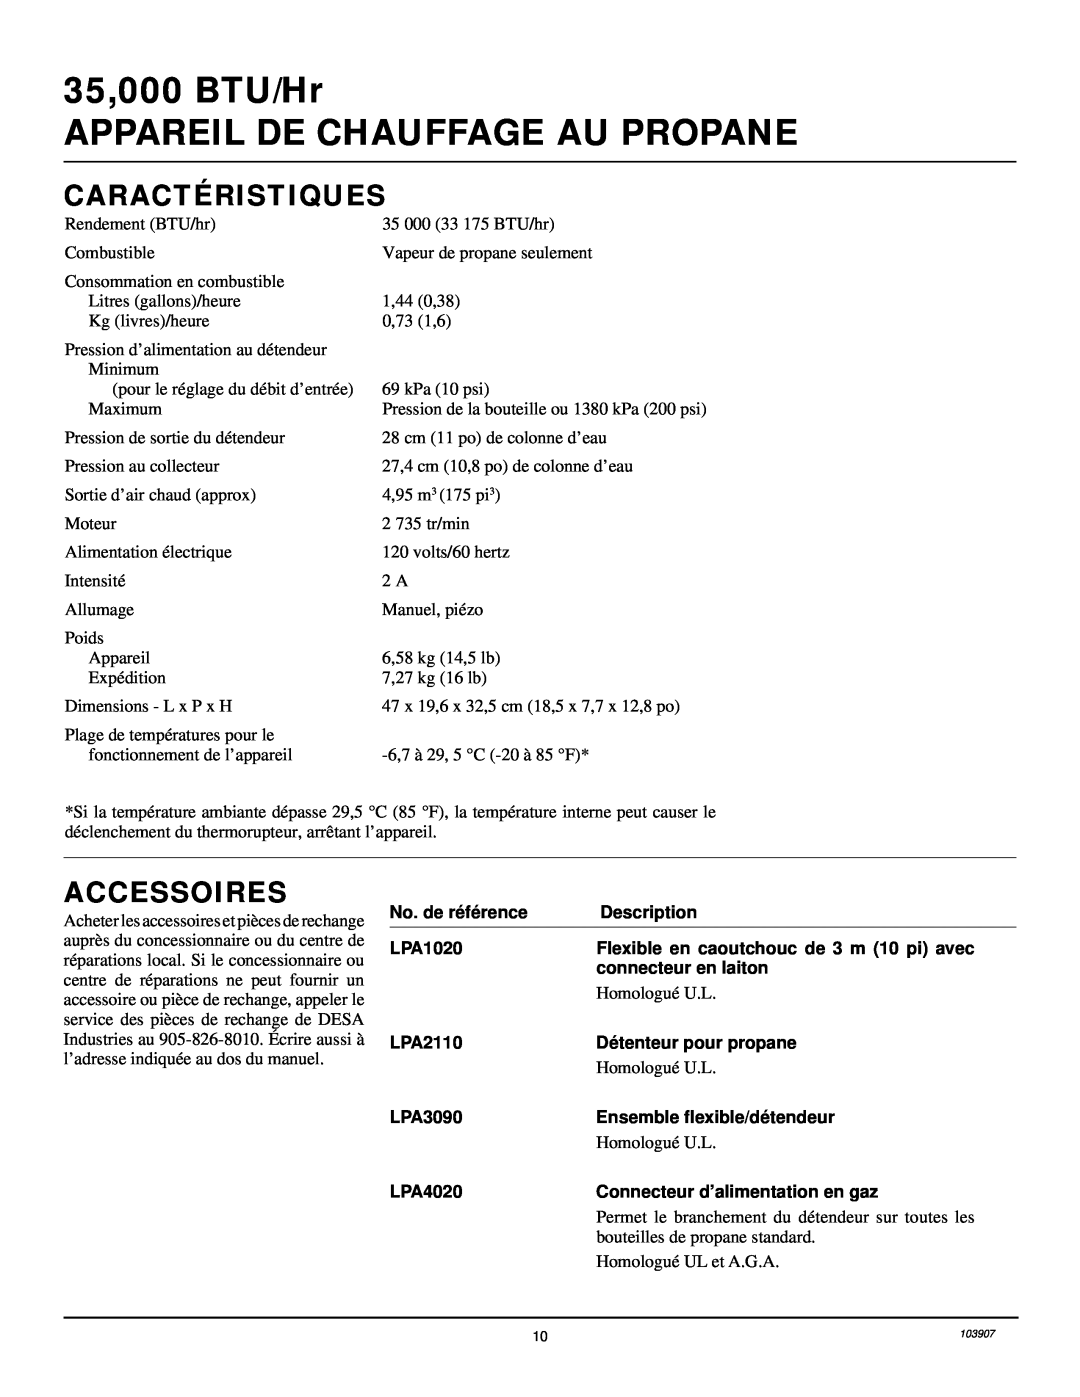 Desa RCLP35B owner manual Caractéristiques, Accessoires, 35,000 BTU/Hr APPAREIL DE CHAUFFAGE AU PROPANE, Homologué U.L 